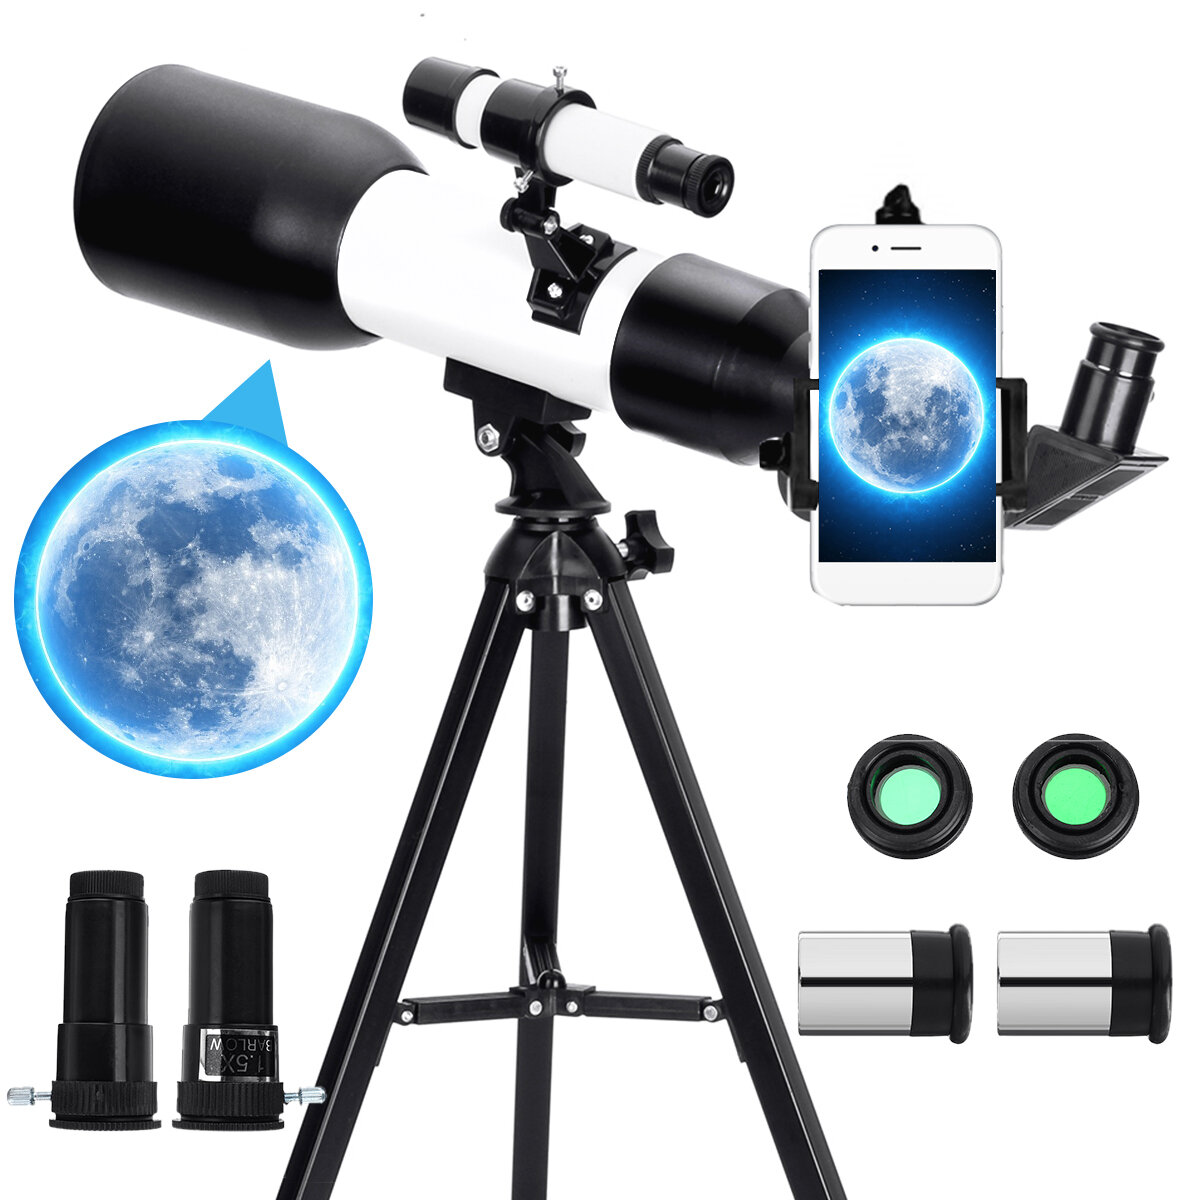 Eyebre csillagászati távcső 60 mm-es rekesz 360 mm-es gyújtótávolságú állvány kültéri kempingtávcső telefontartóval